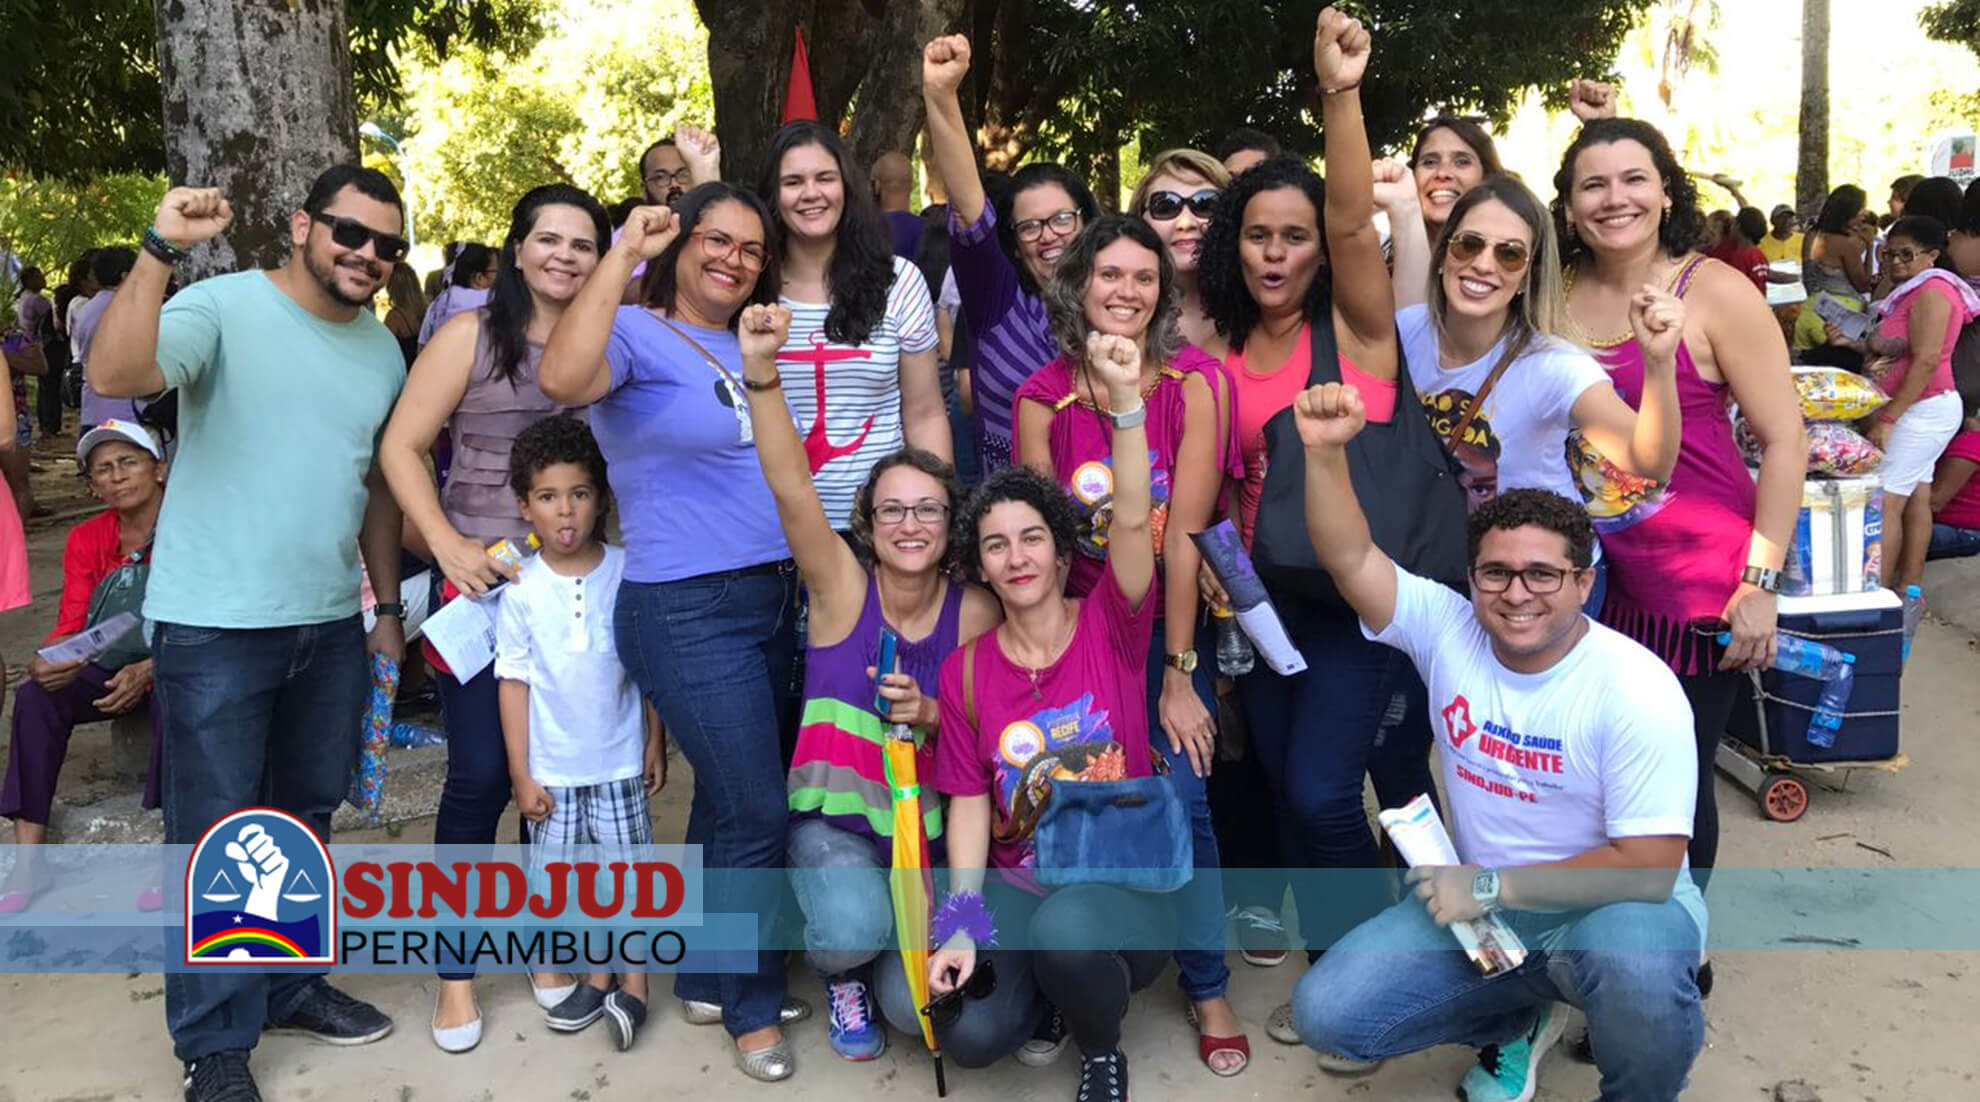 SINDJUD-PE Marca Presença na Parada Brasileira de Mulheres